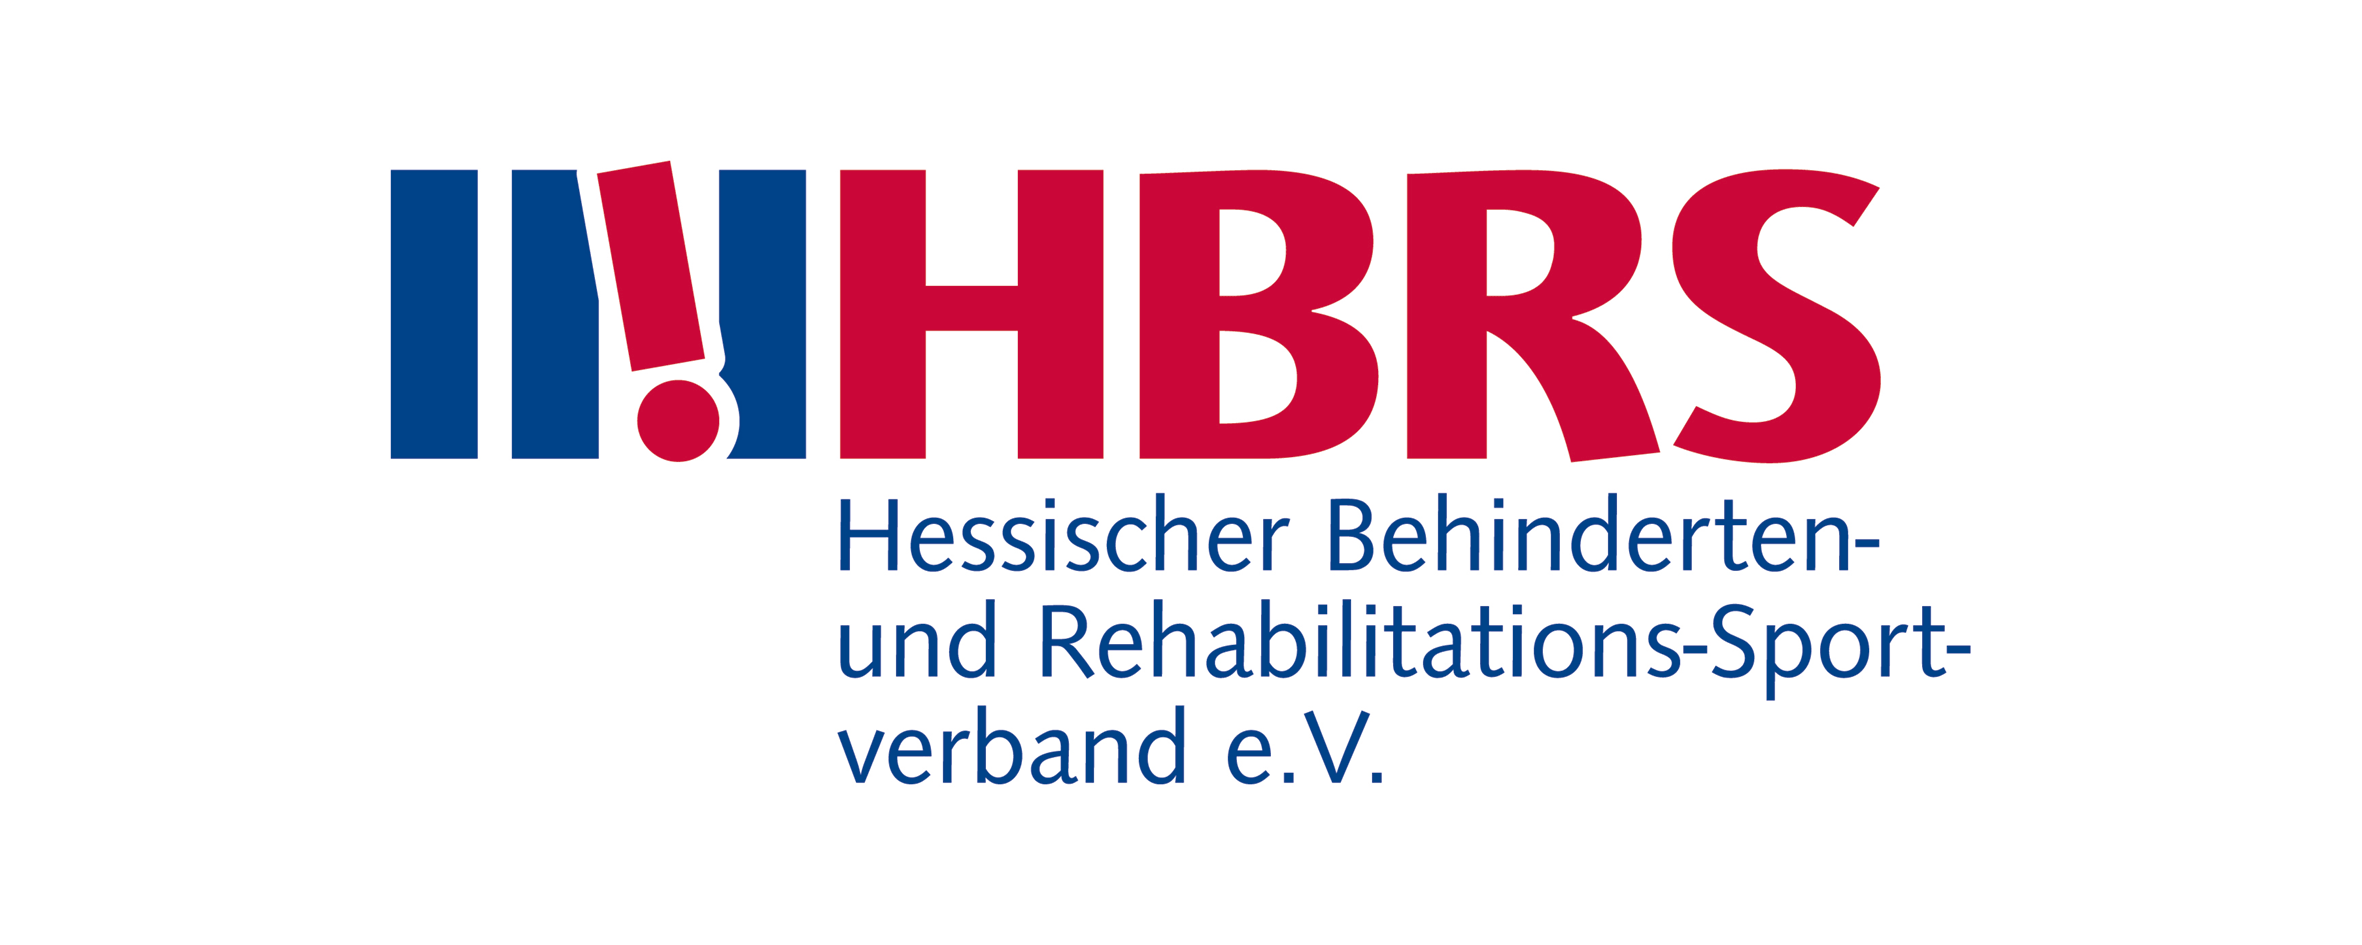  Hessischen Behinderten- und Rehabilitationssportverbandes